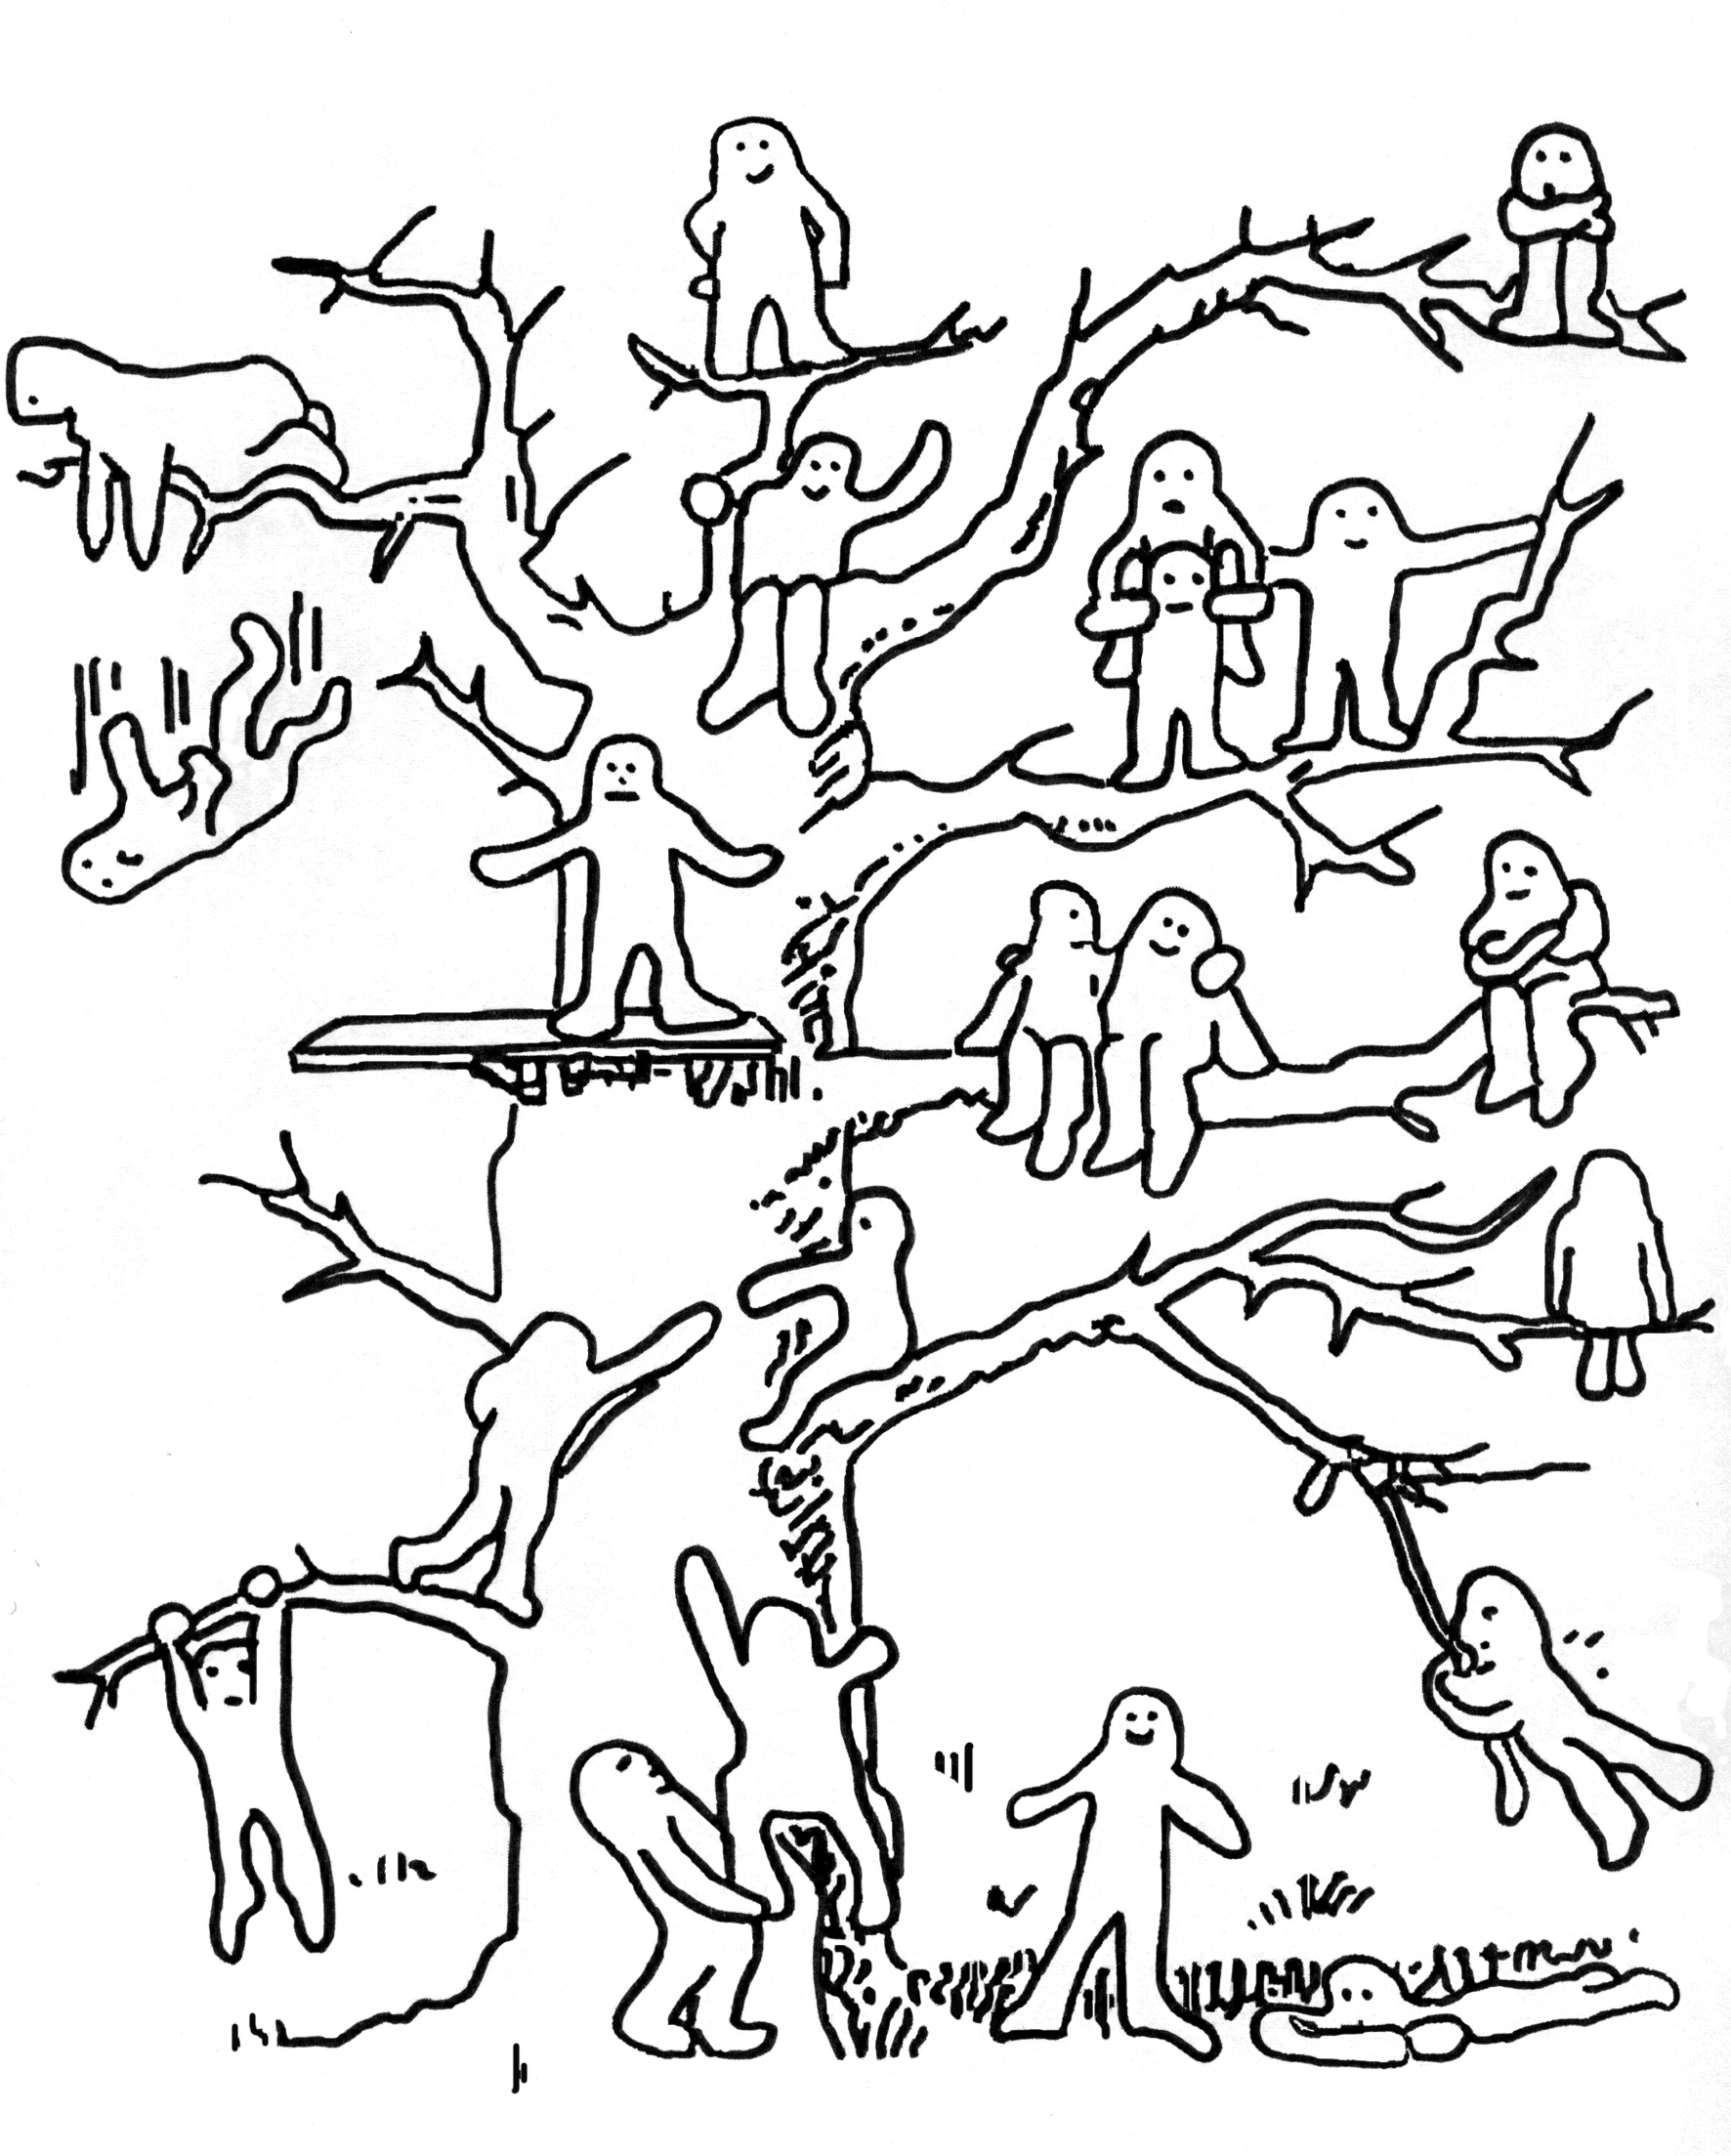 Пип Уилсон дерево с человечками